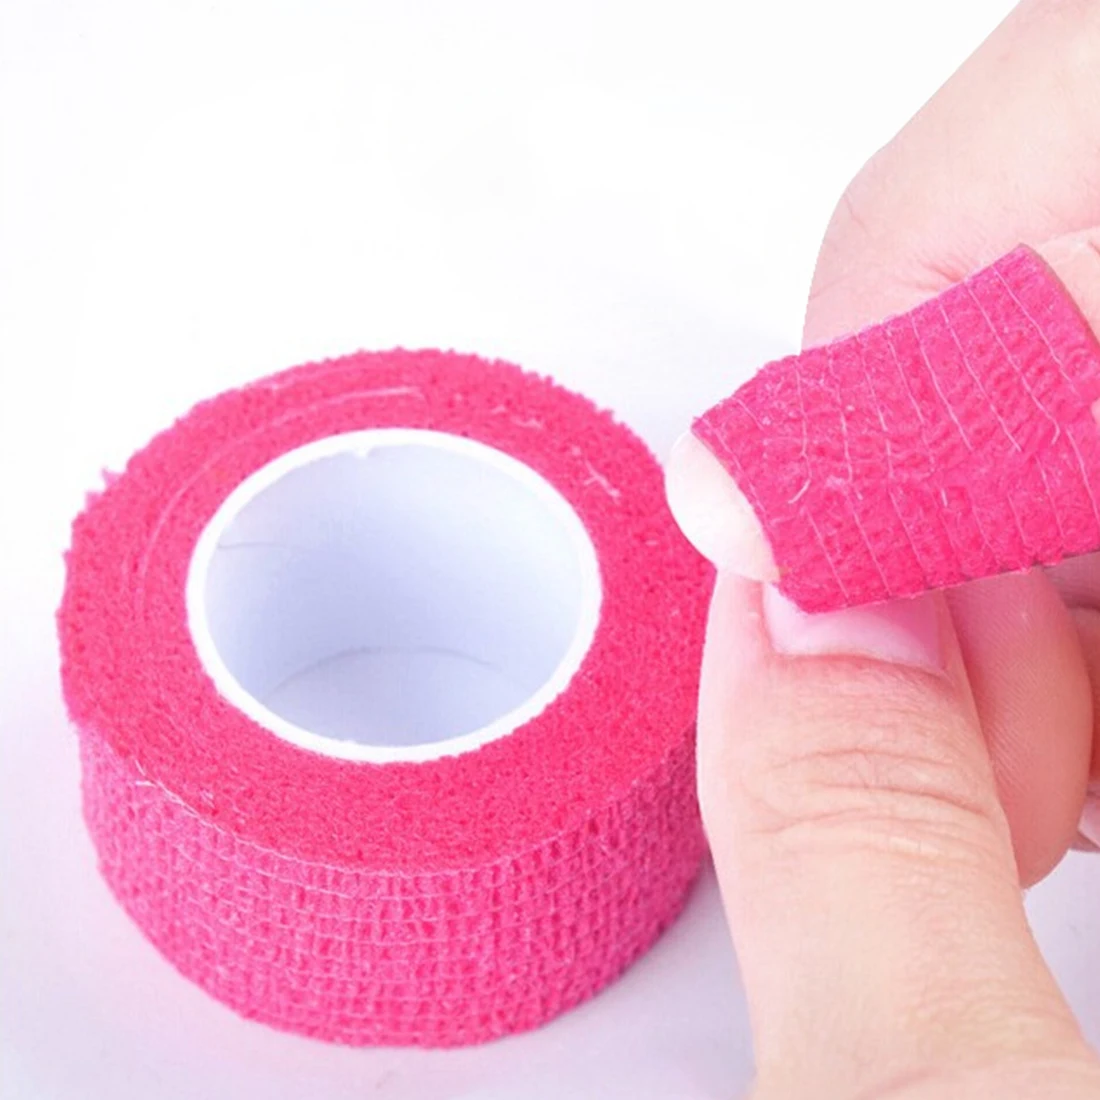 Не плетеная повязка УФ гель снять клейкую эластичную ленту 1 рулон случайных цветов защита пальцев маникюрная обертка для удаления лака для ногтей